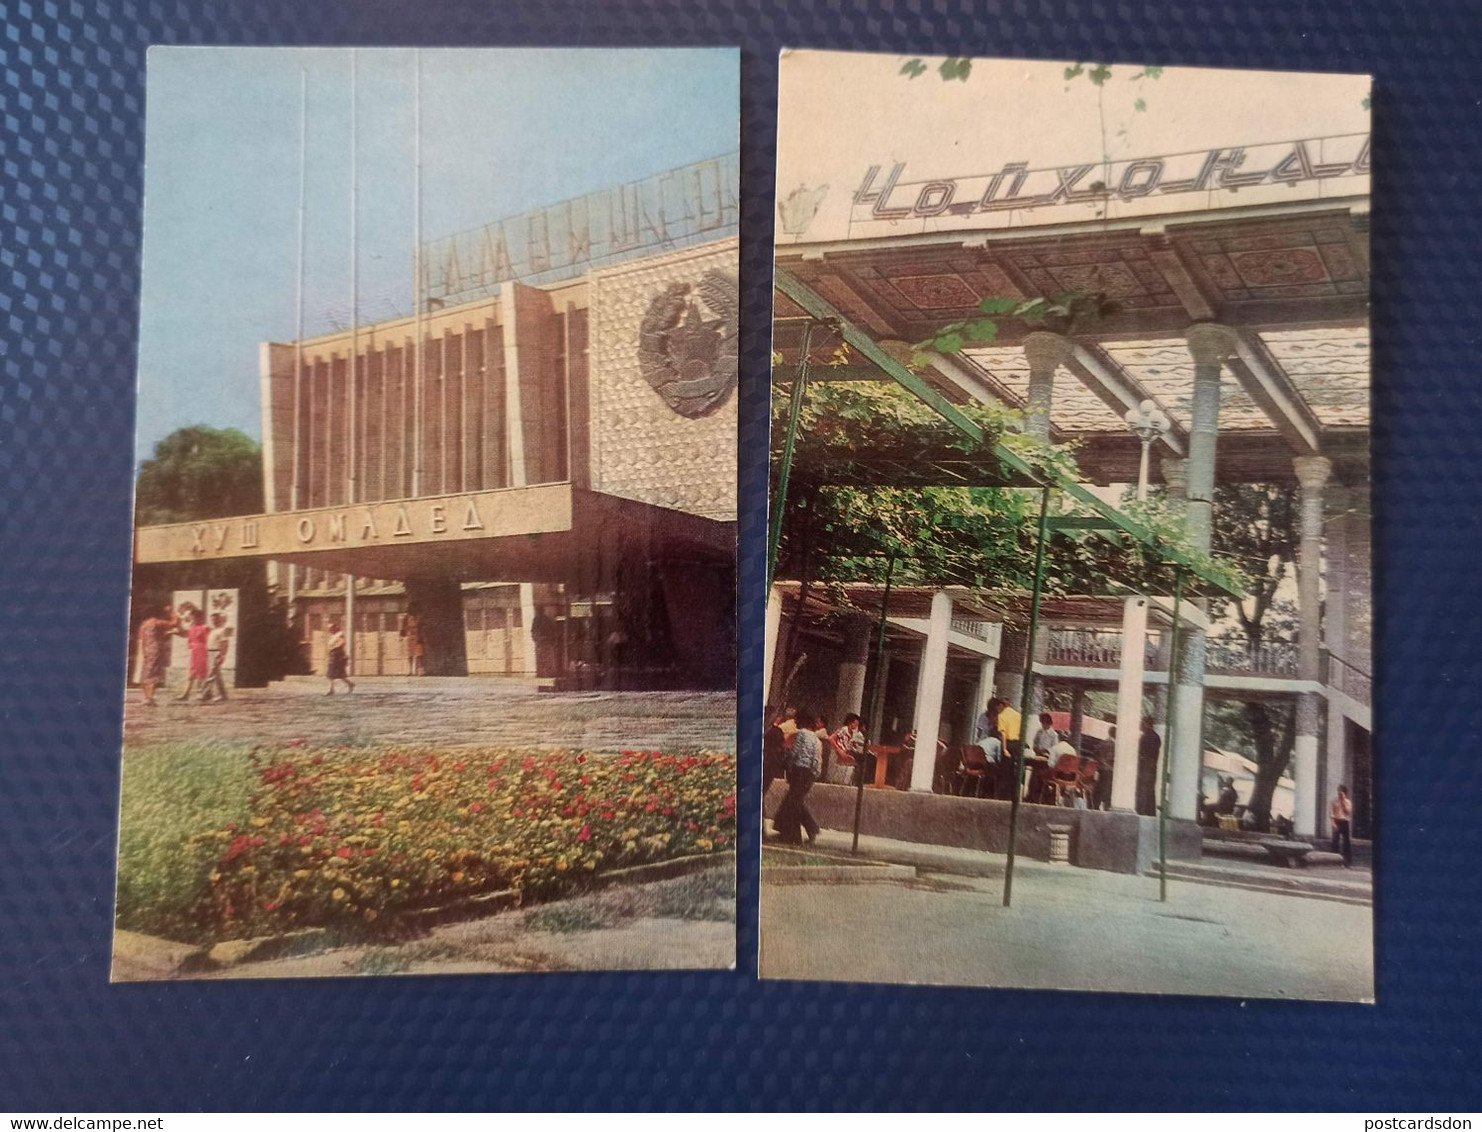 TAJIKISTAN  Dushanbe  Capital.  12 Postcards Lot  - Old USSR Postcard  - 1970s Lenin Monument - Tadjikistan